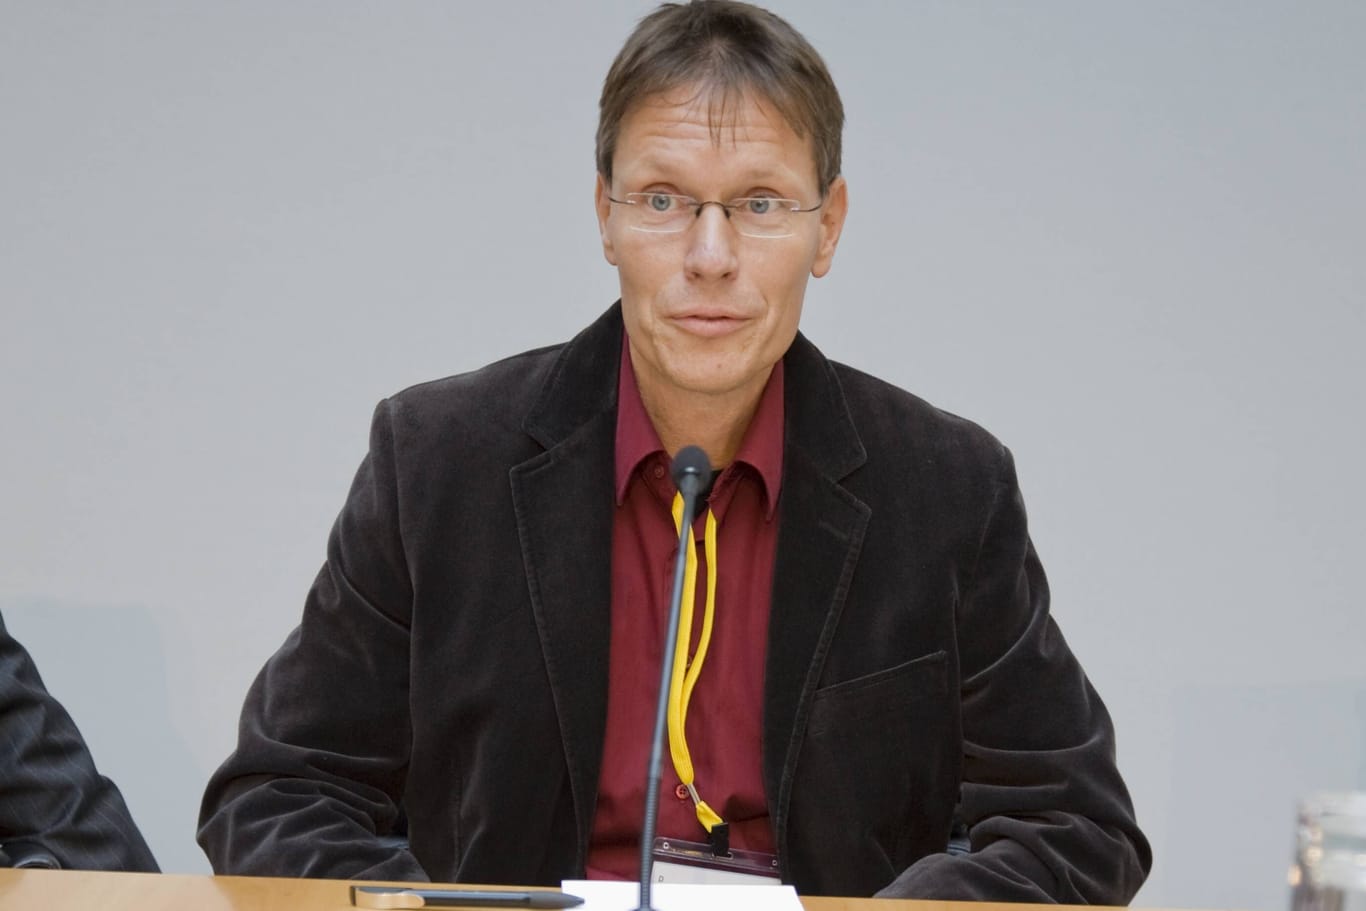 Michael Meyen auf einer Podiumsdiskussion in Berlin (Archivbild): Der Universitätsprofessor wird Herausgeber einer umstrittenen Wochenzeitung.